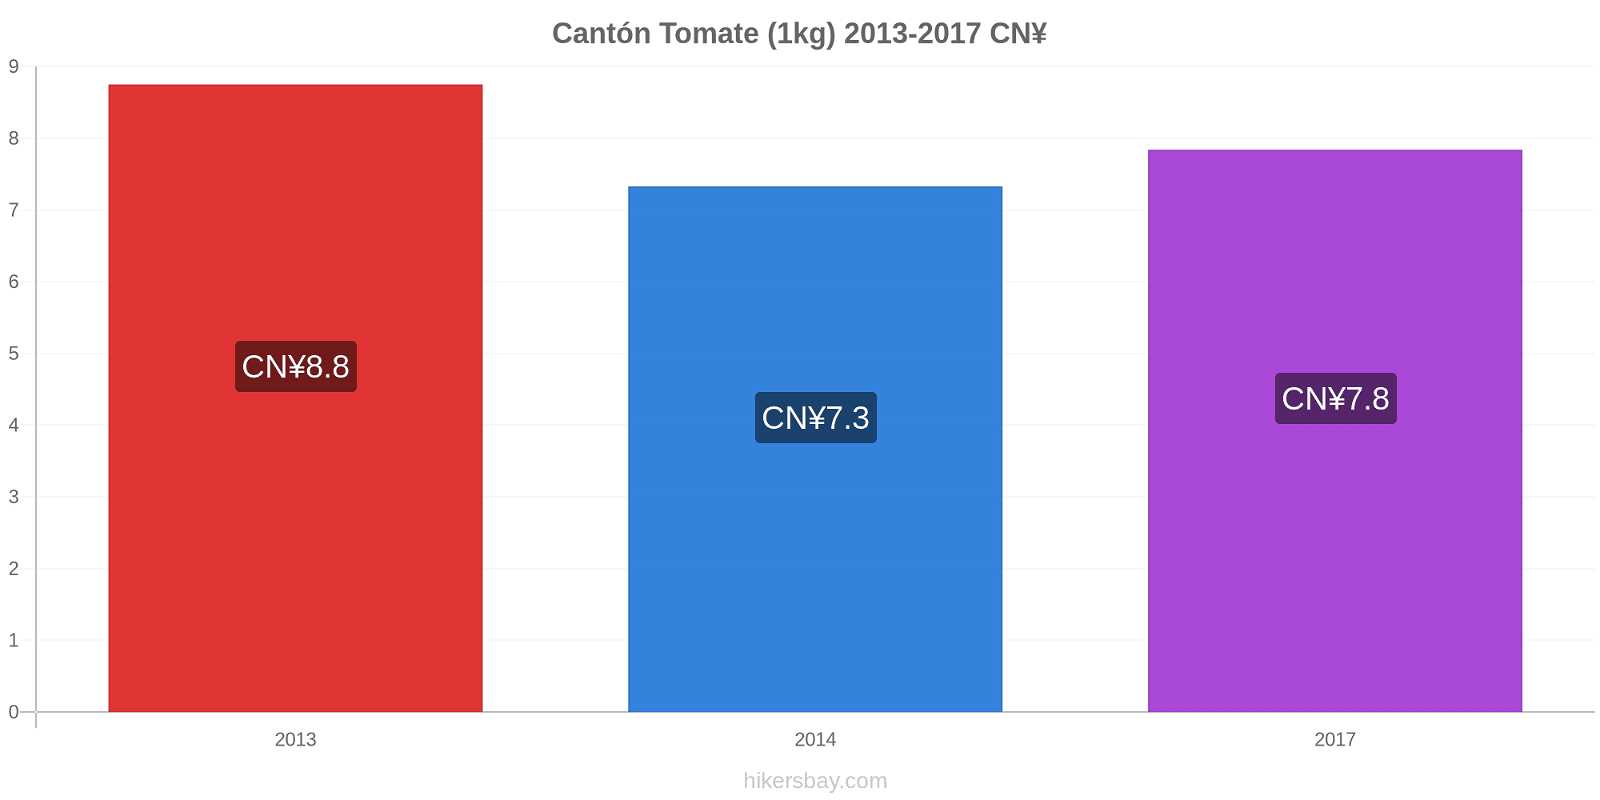 Cantón cambios de precios Tomate (1kg) hikersbay.com